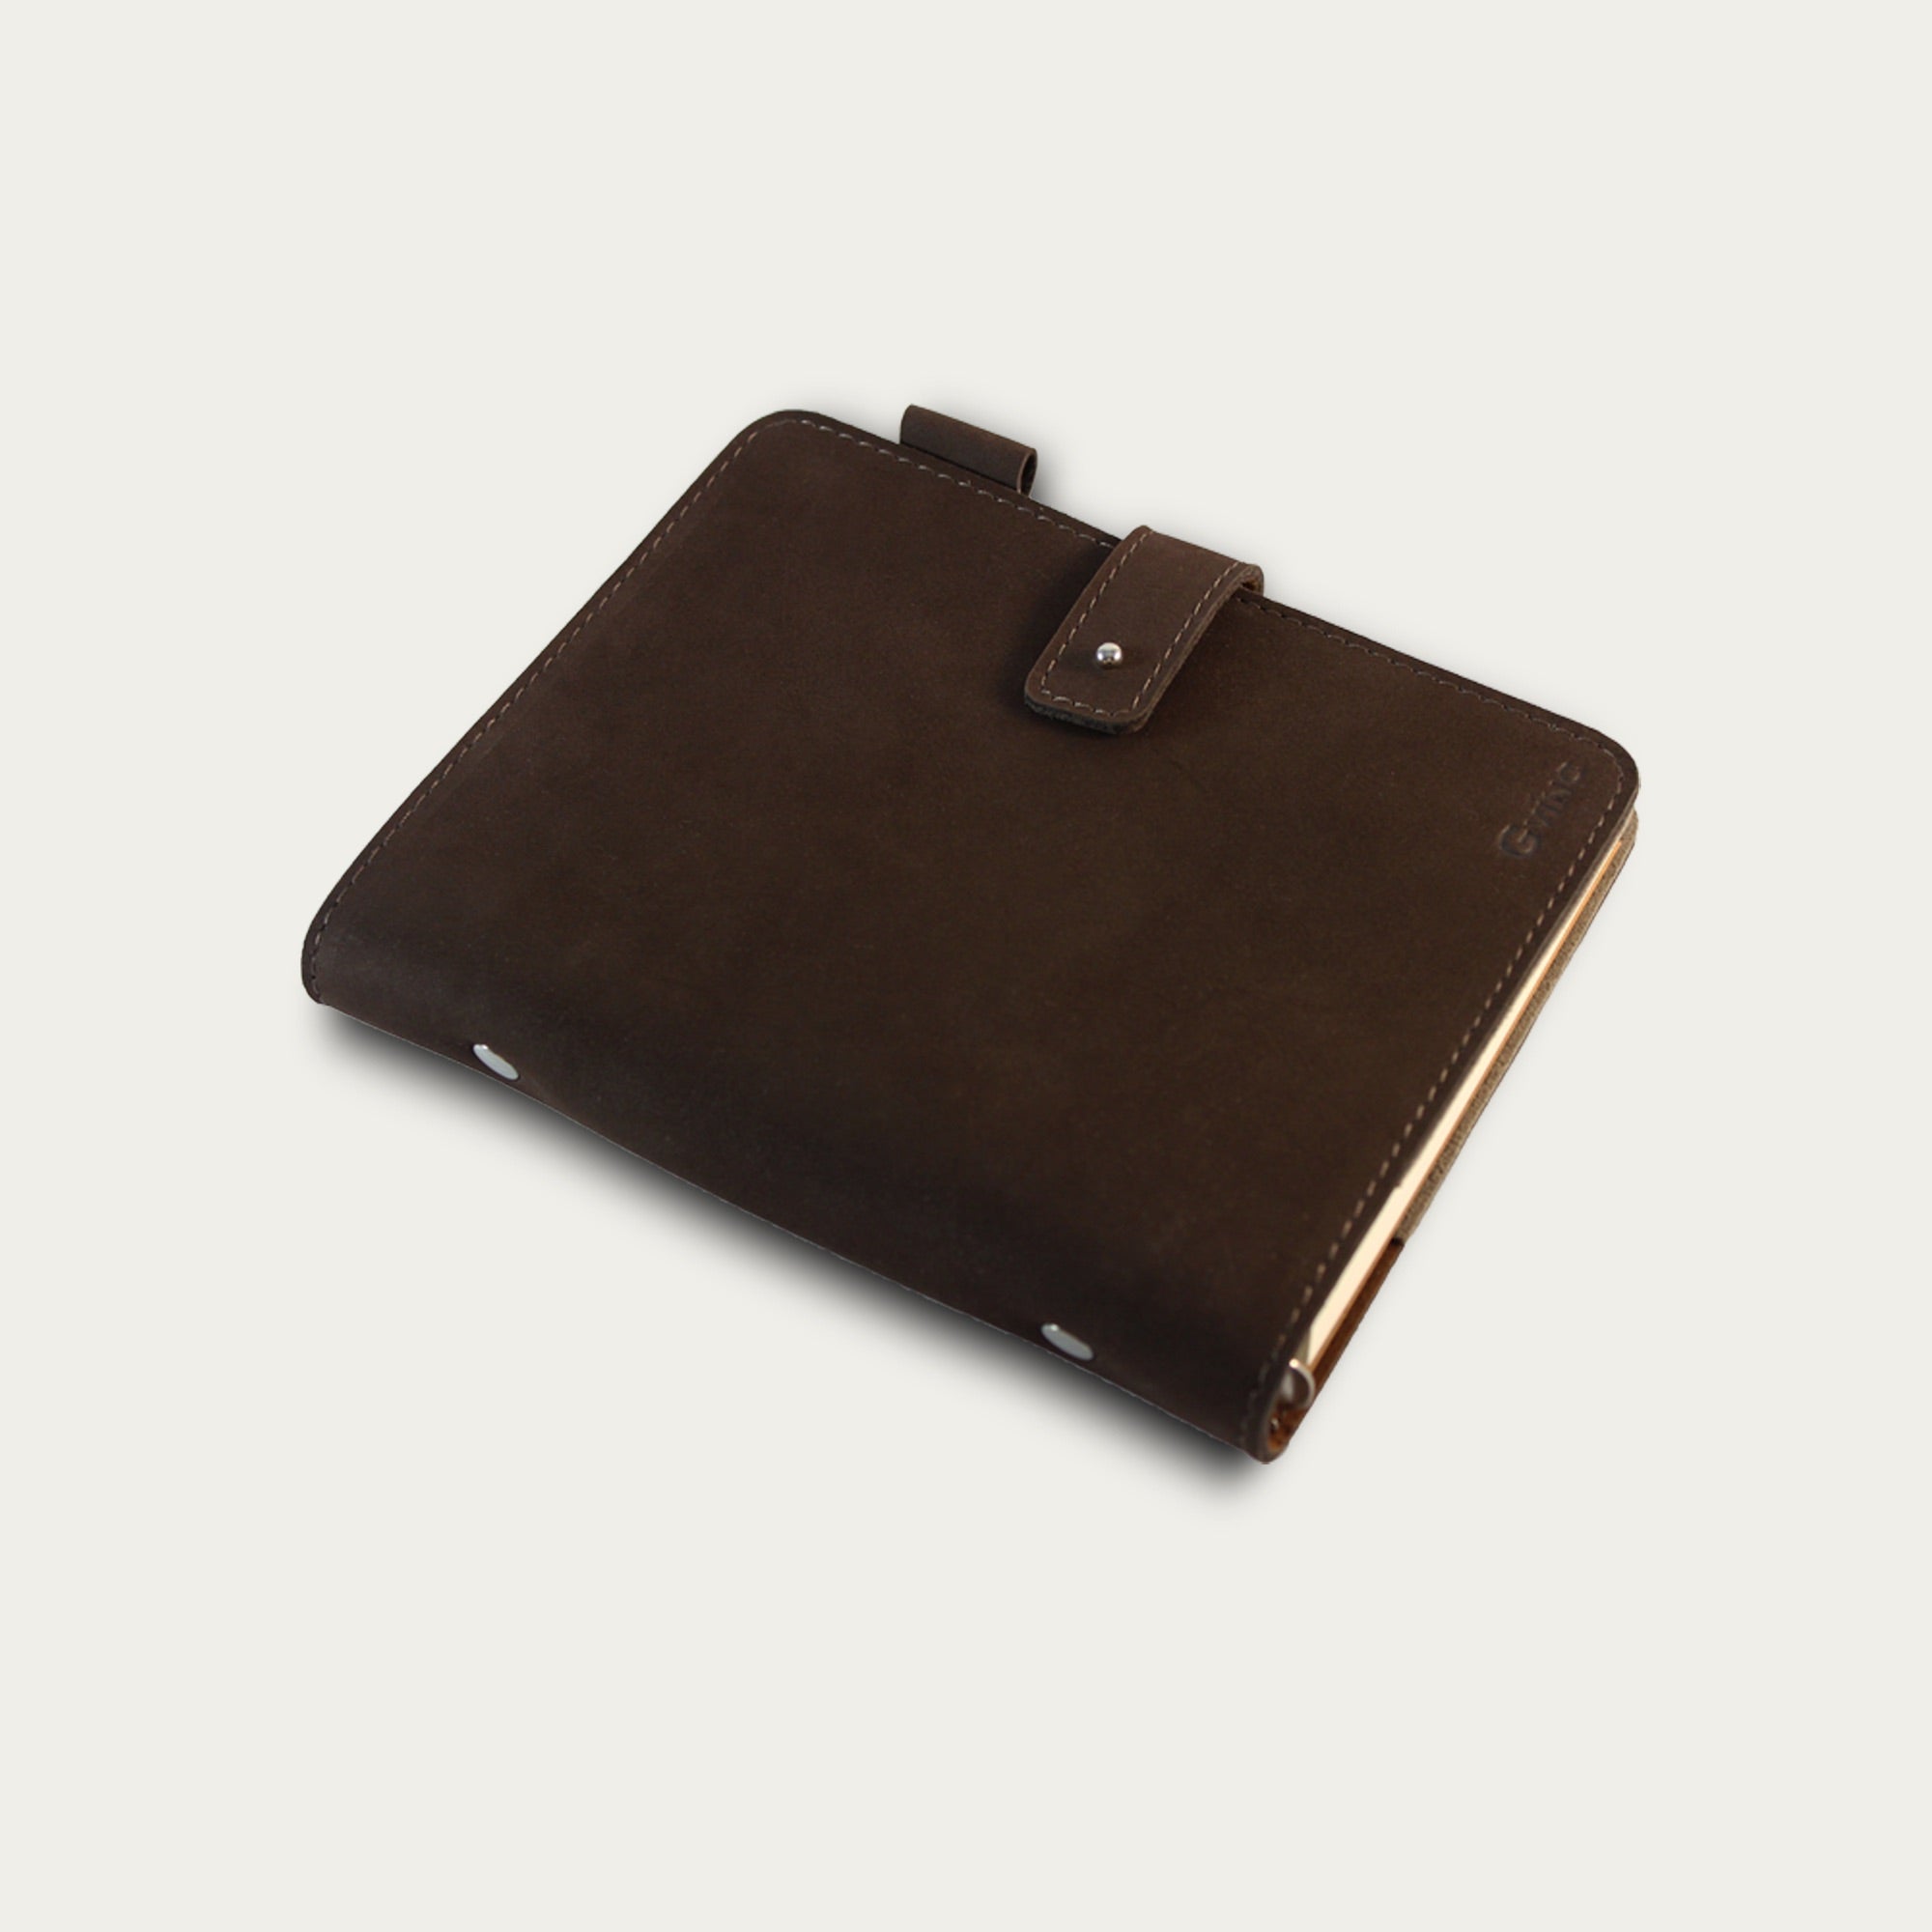 สมุดโน๊ต รุ่น Cinnamon Notebook (M) | มี 2 สี